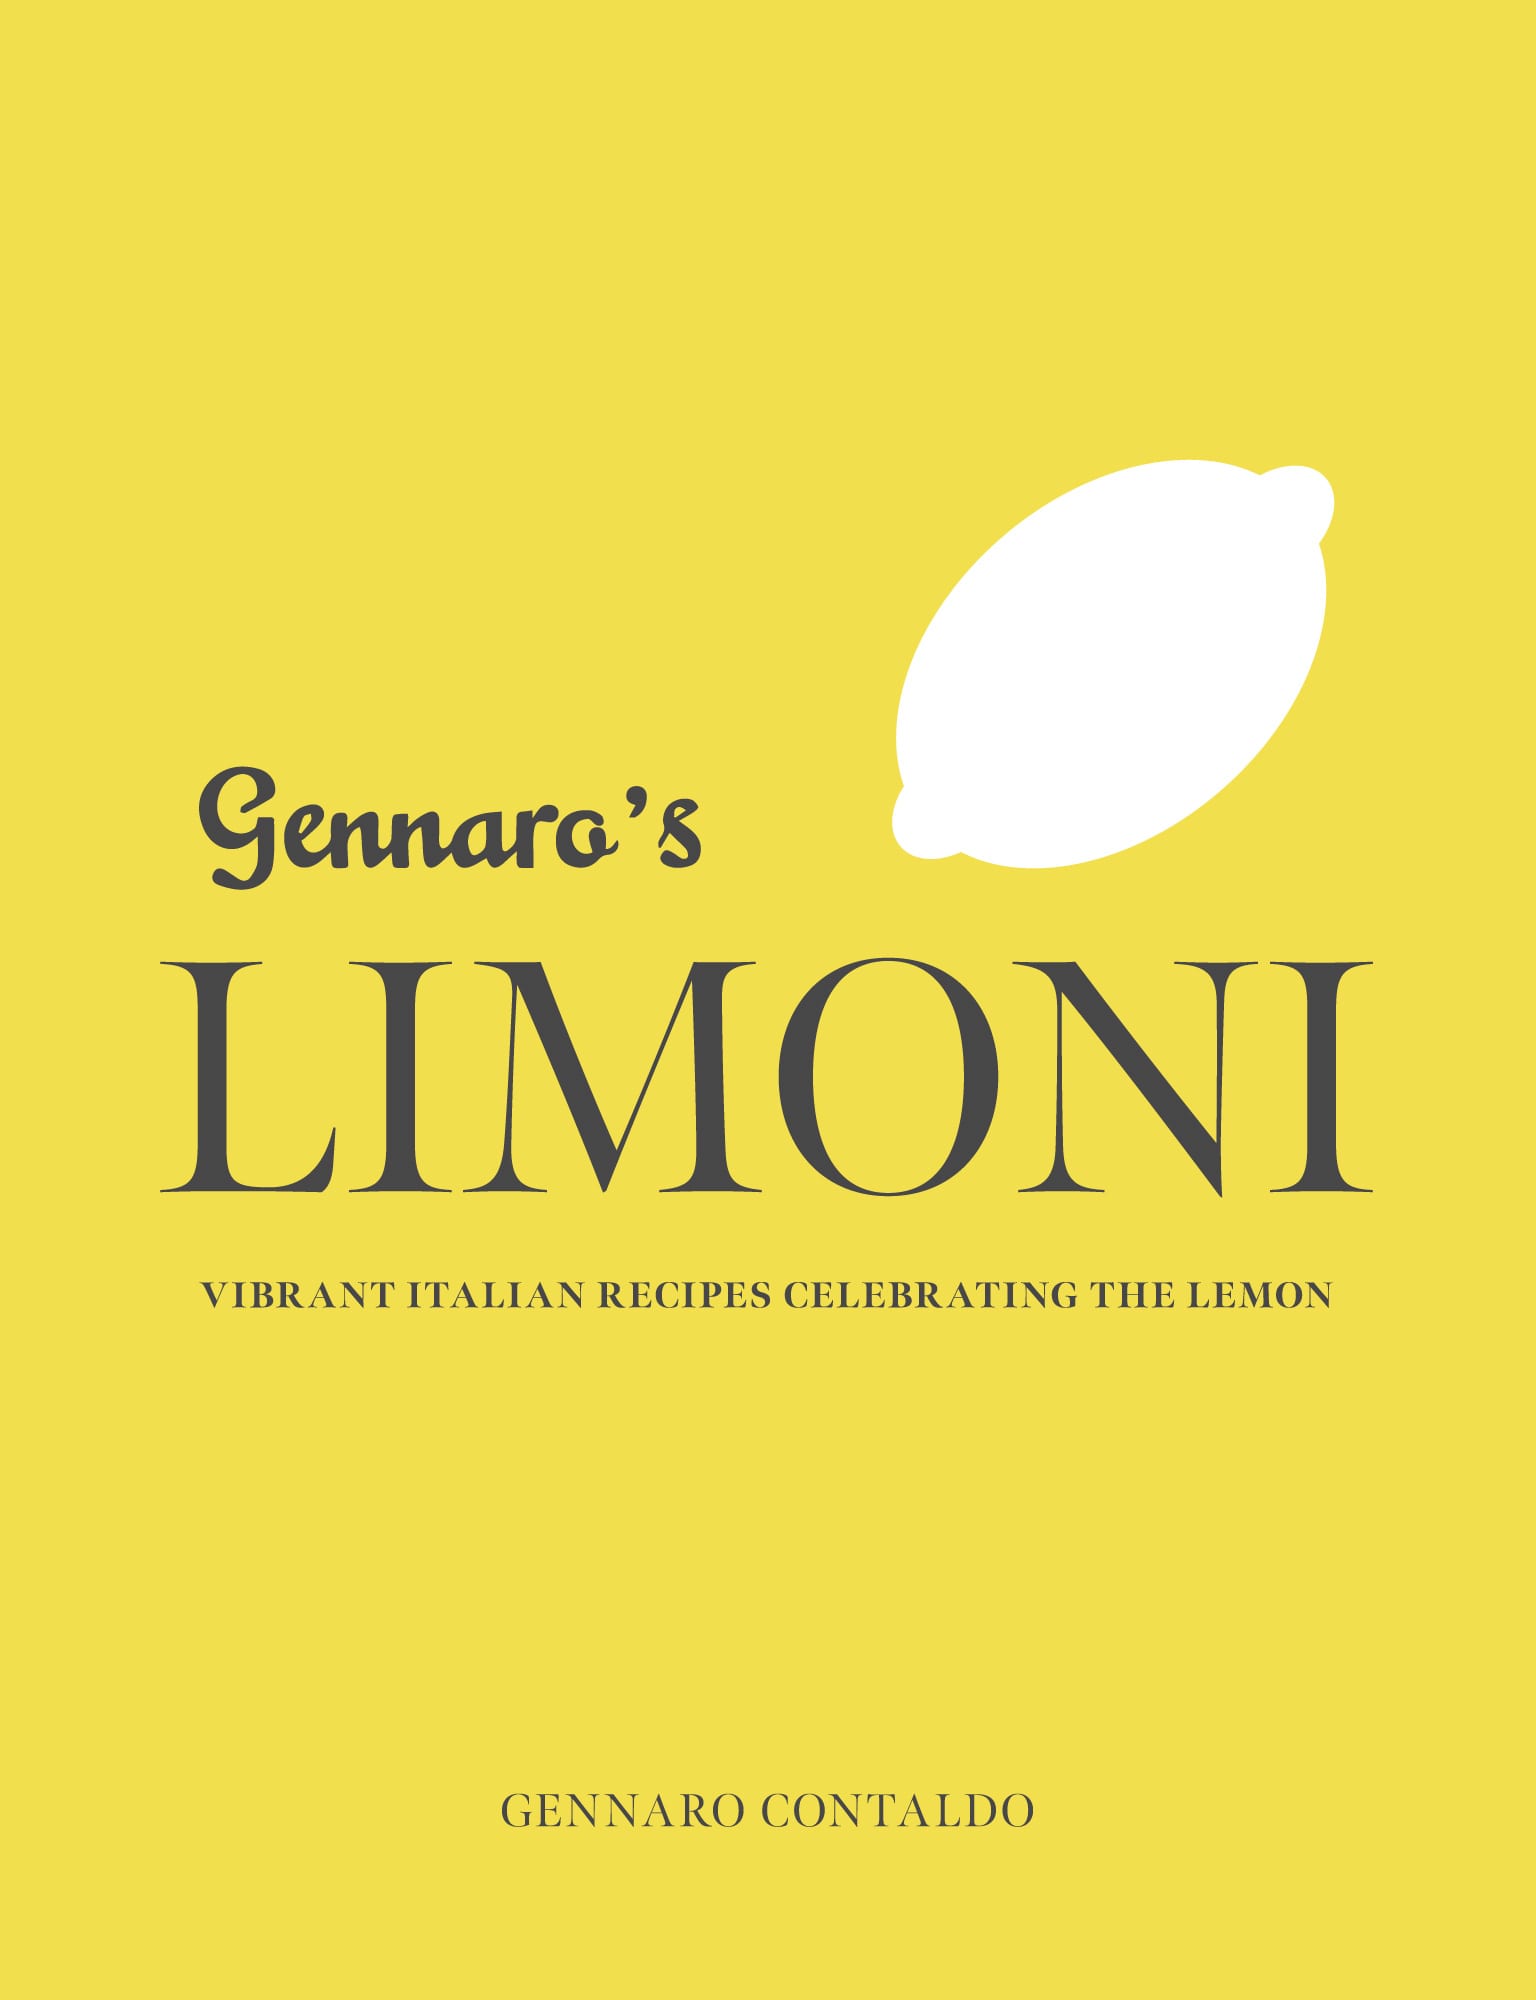 Gennaro’s Limoni